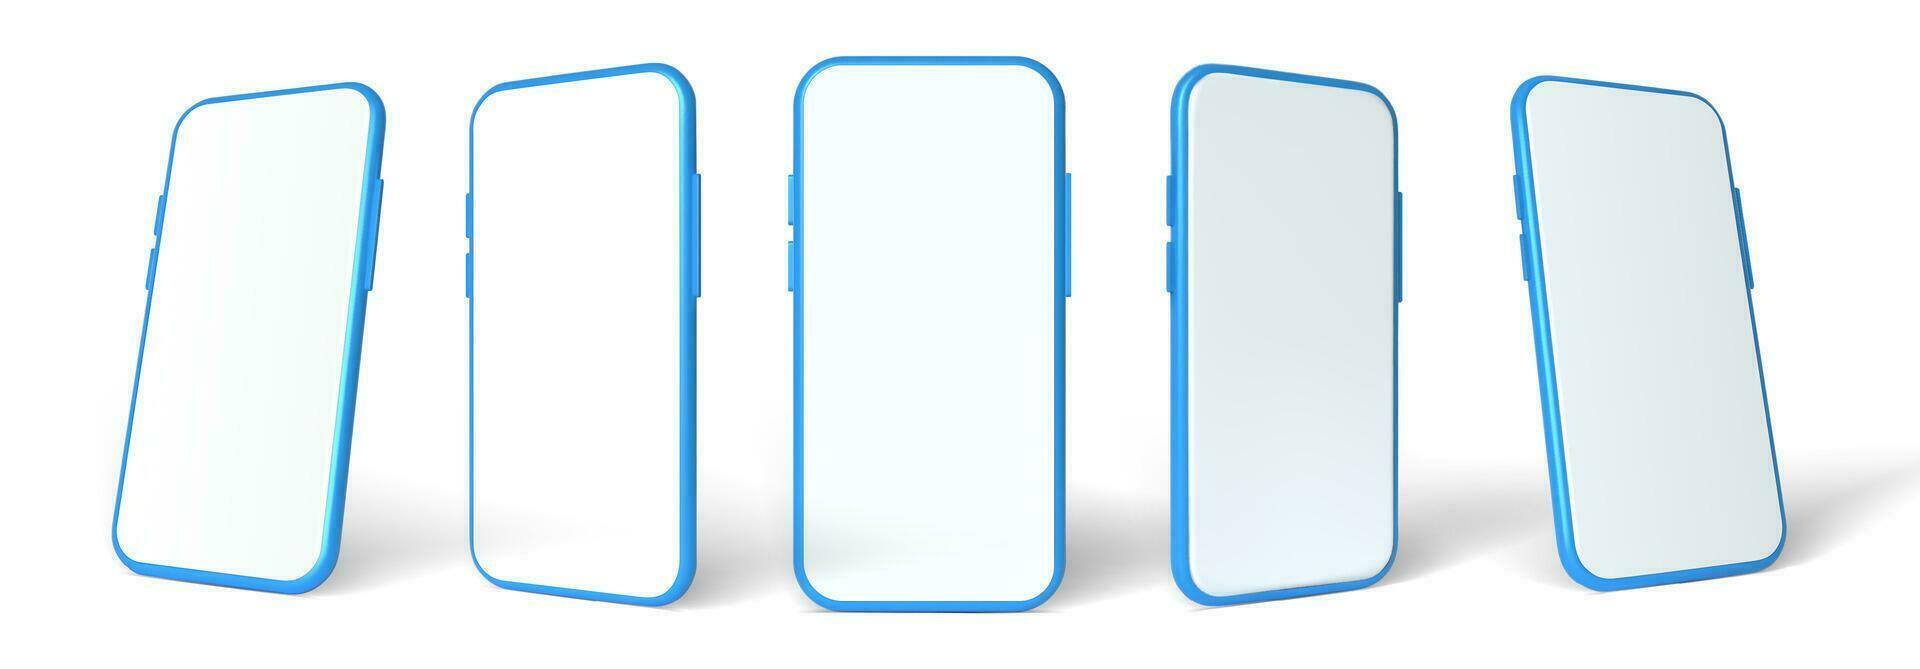 blå smartphone mockup, 3d vektor mall uppsättning. mobil telefon främre se på de vit bakgrund.